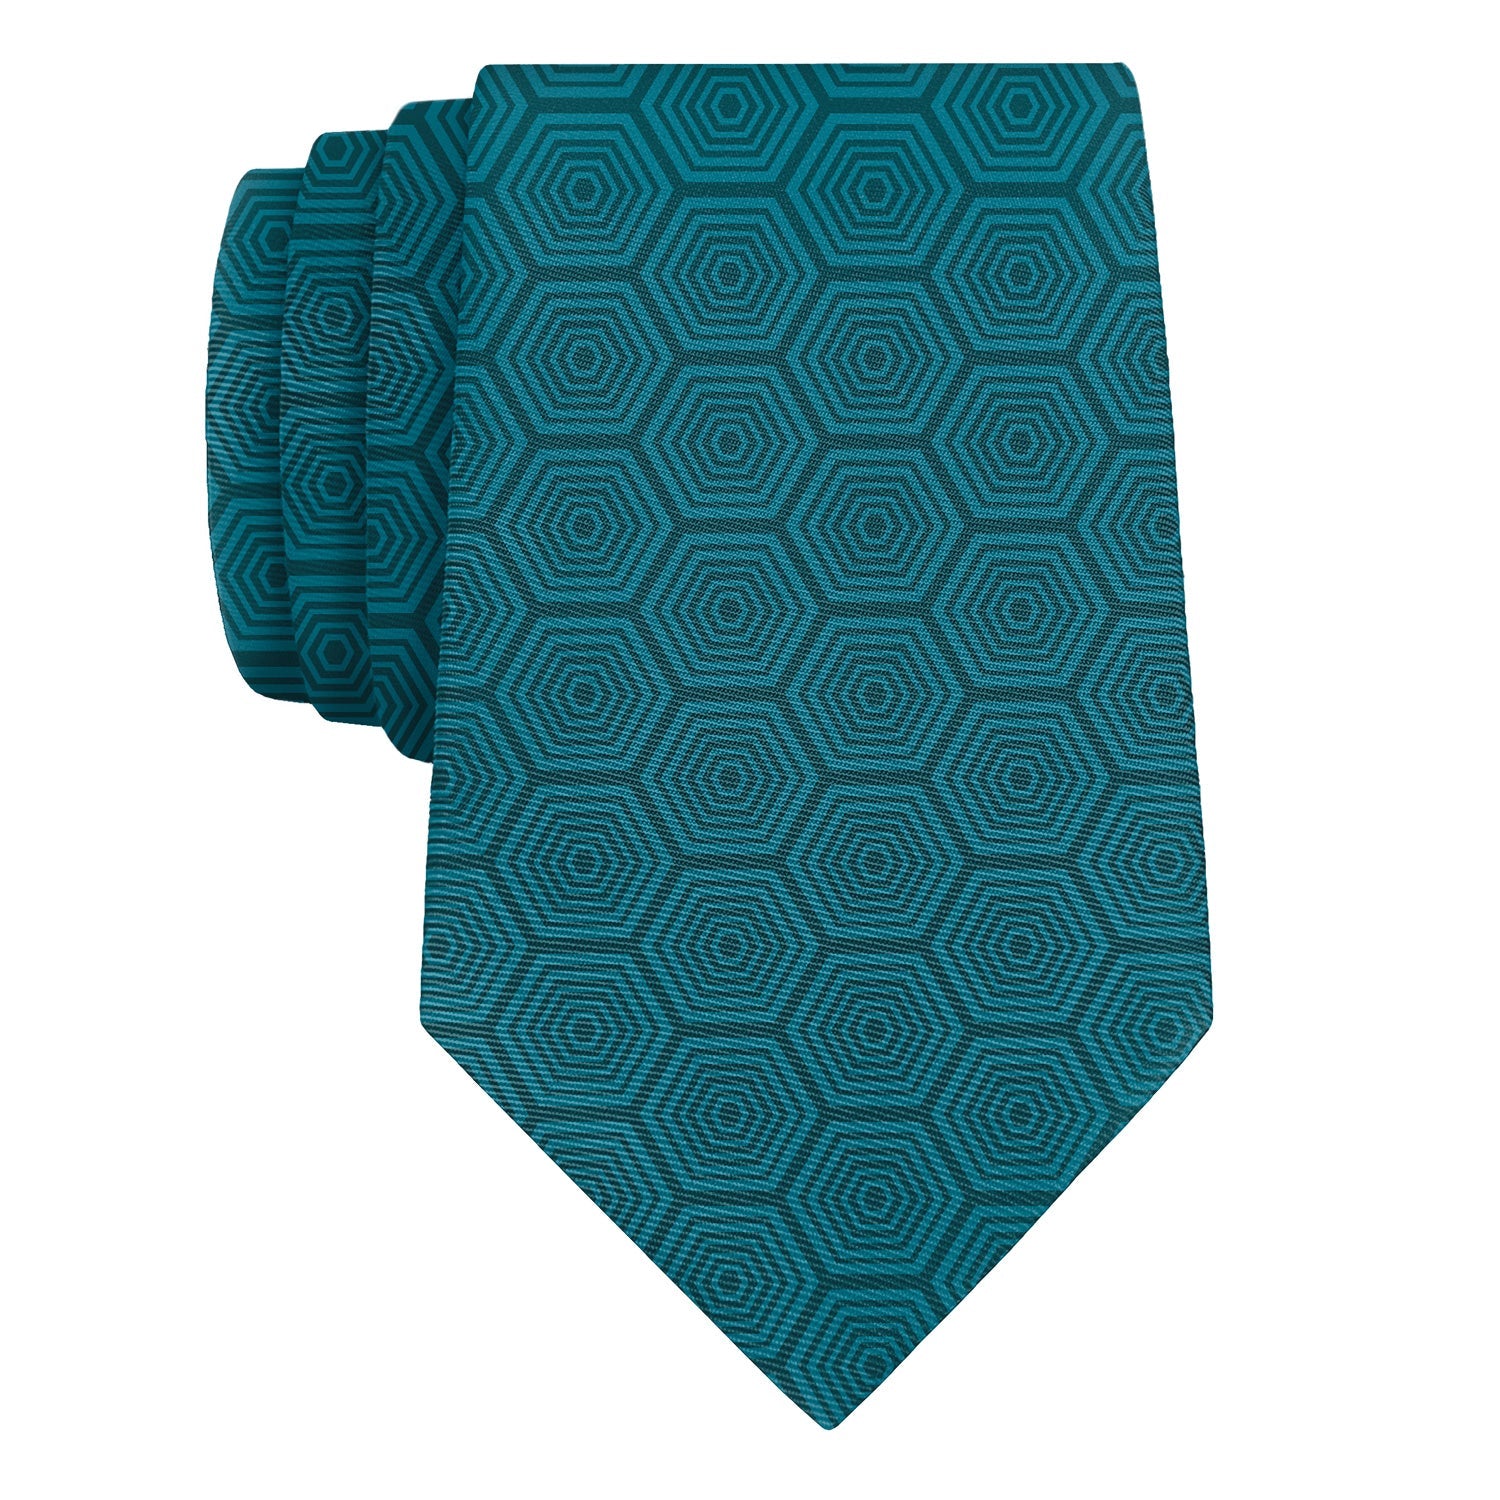 Tortoiseshell Geometric Necktie - Knotty 2.75" -  - Knotty Tie Co.